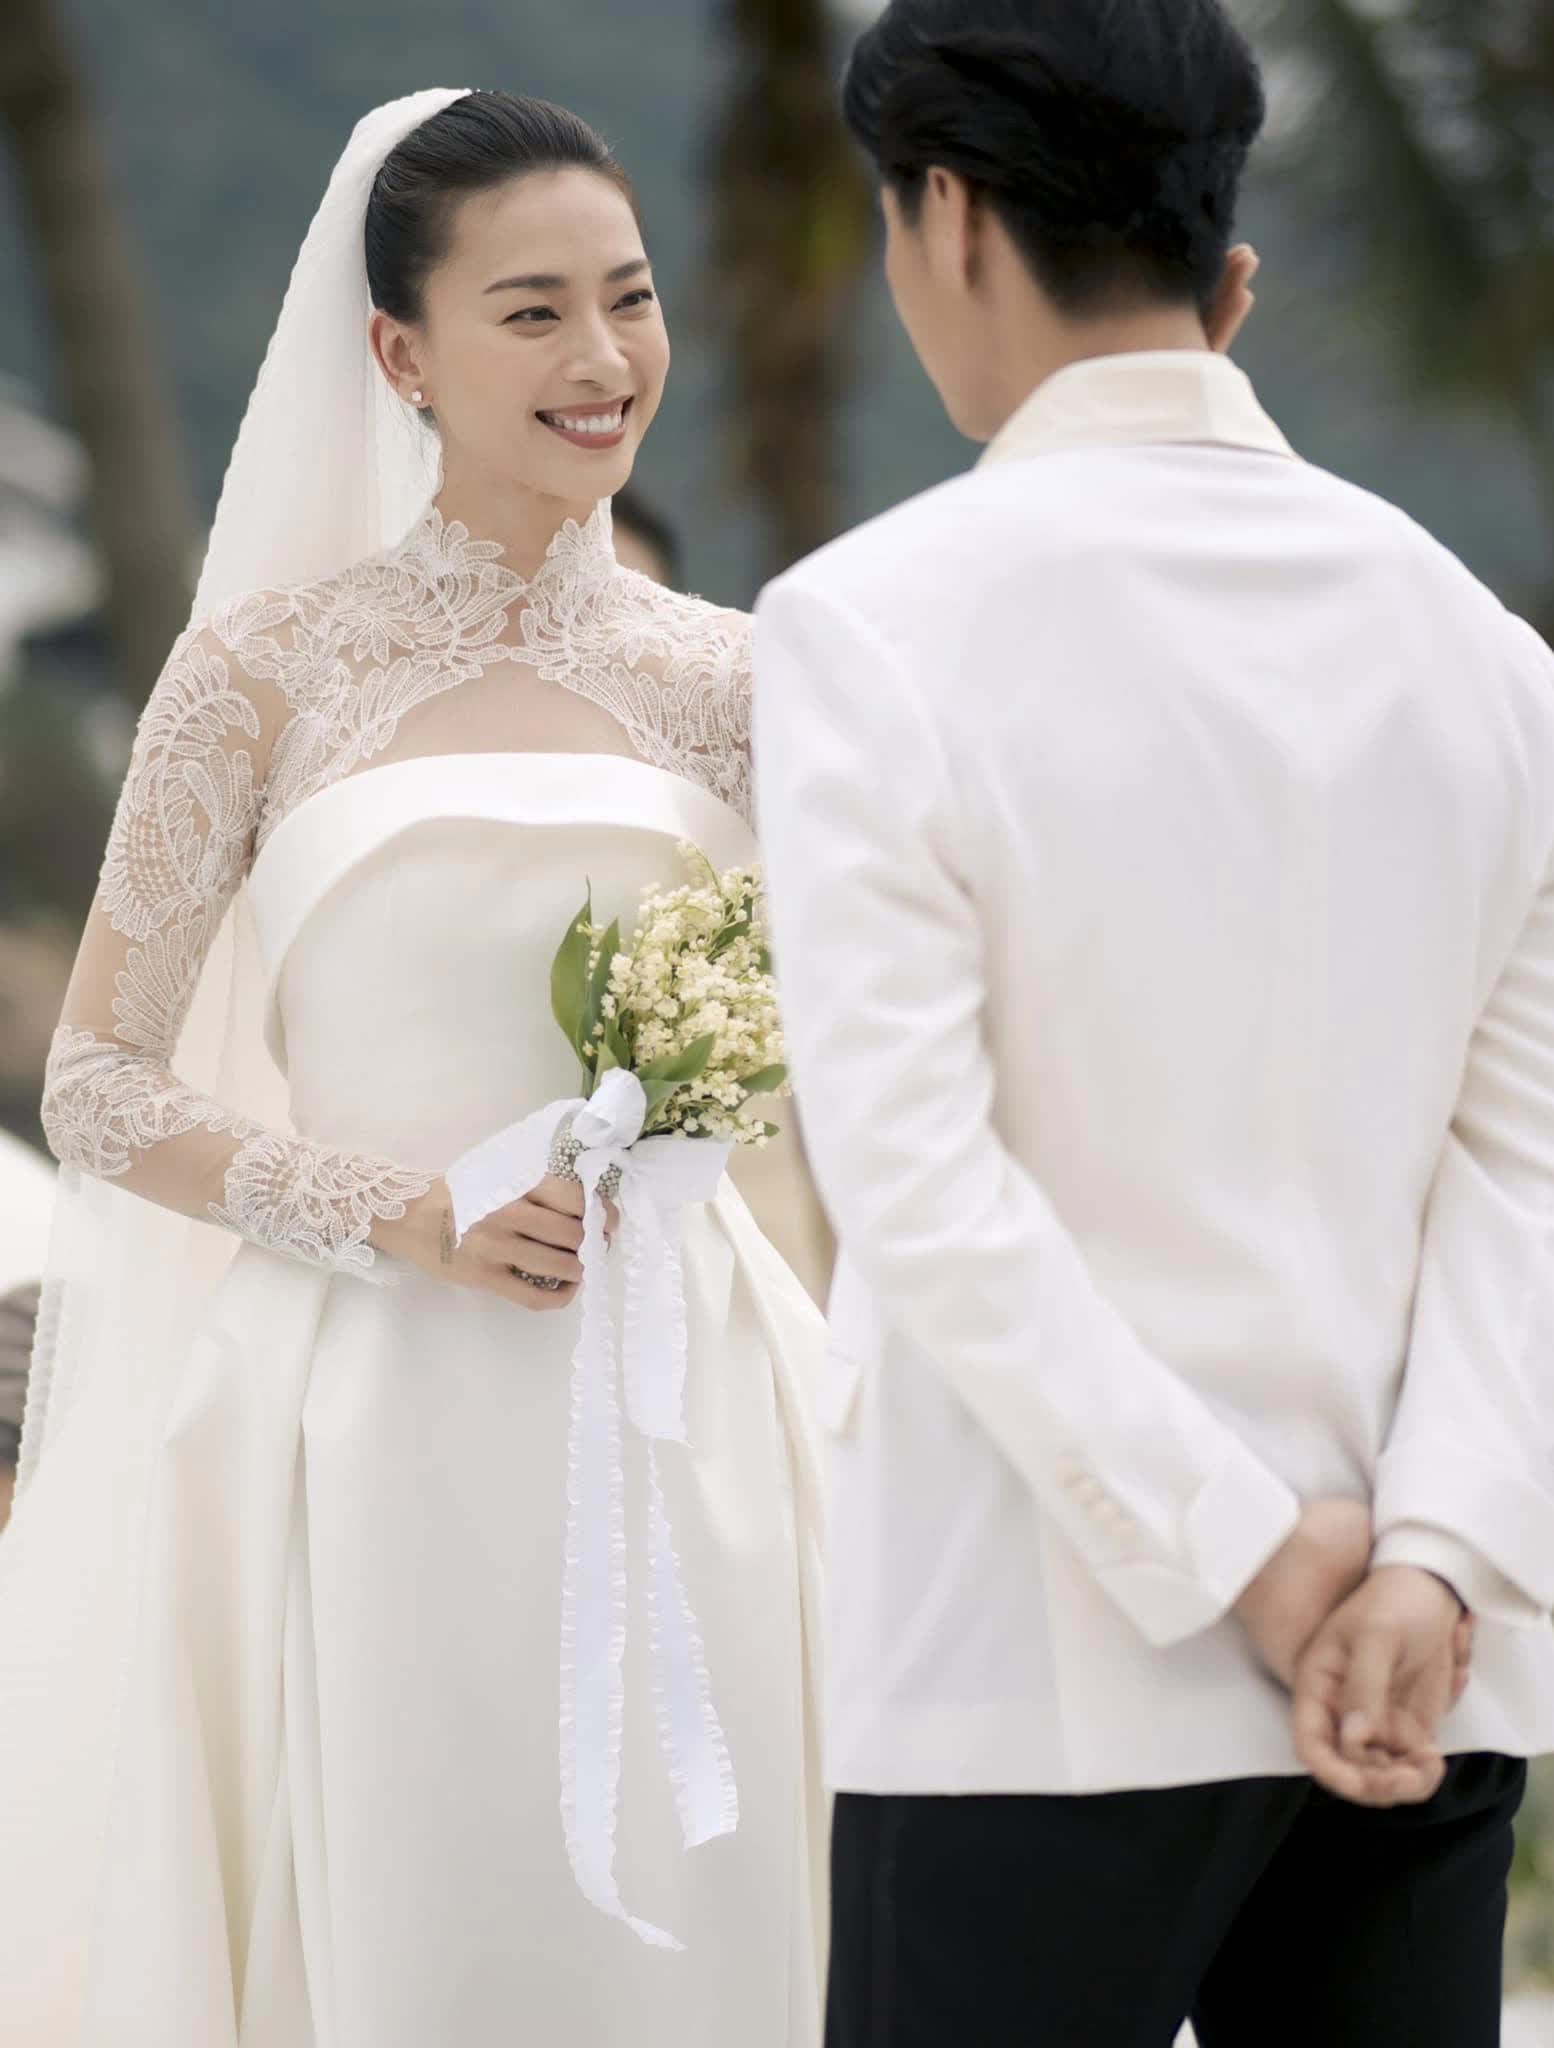 4 sao Việt 'chốt đơn' sau khi bắt hoa cưới: Đỗ Mỹ Linh và Ngô Thanh Vân được trao lại, 1 mỹ nhân vừa nhập hội - Ảnh 4.